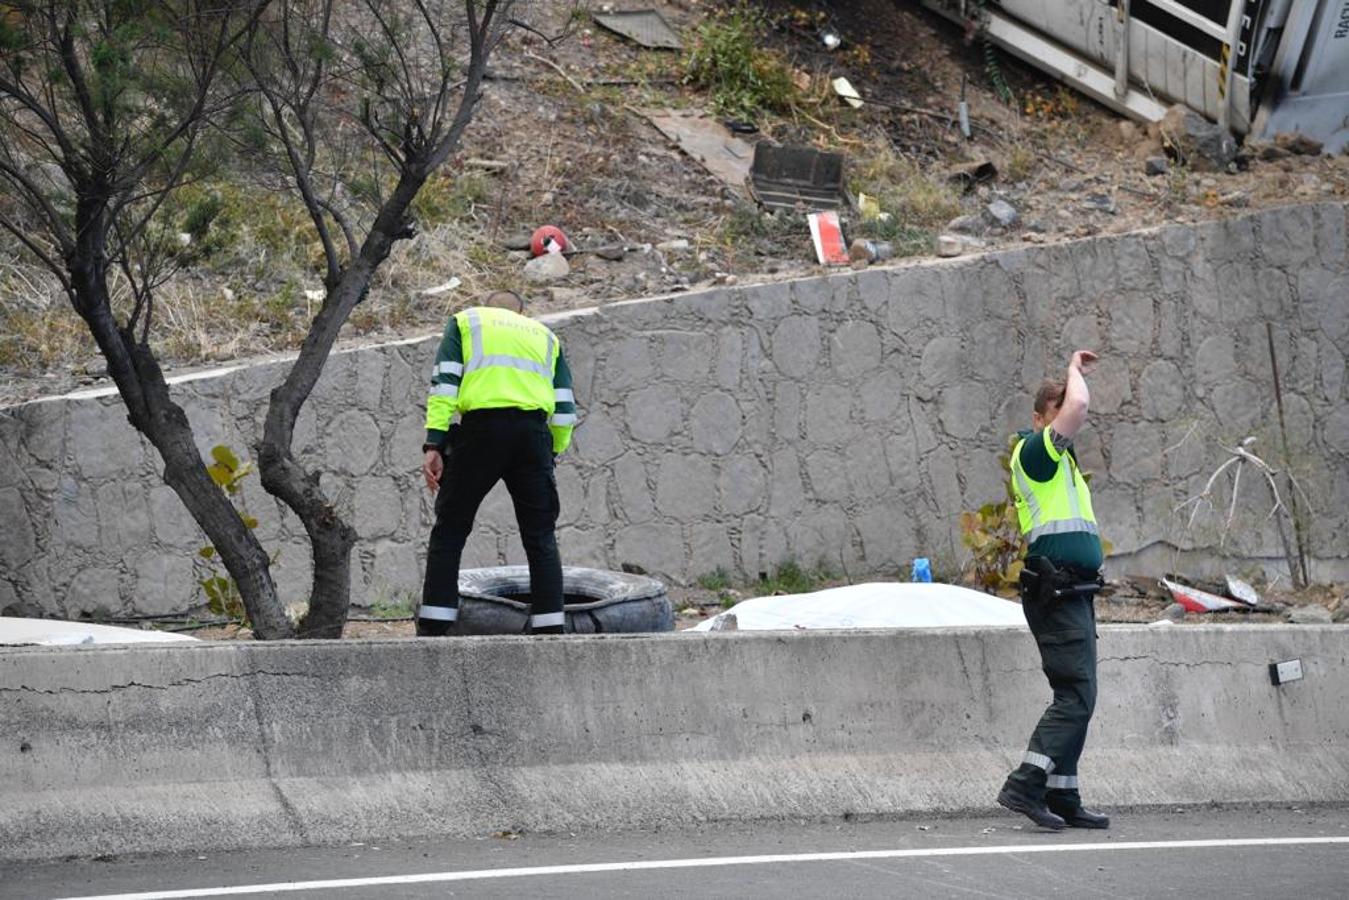 Fotos: Fallece el conductor de un camión tras un aparatoso vuelco en La Laja